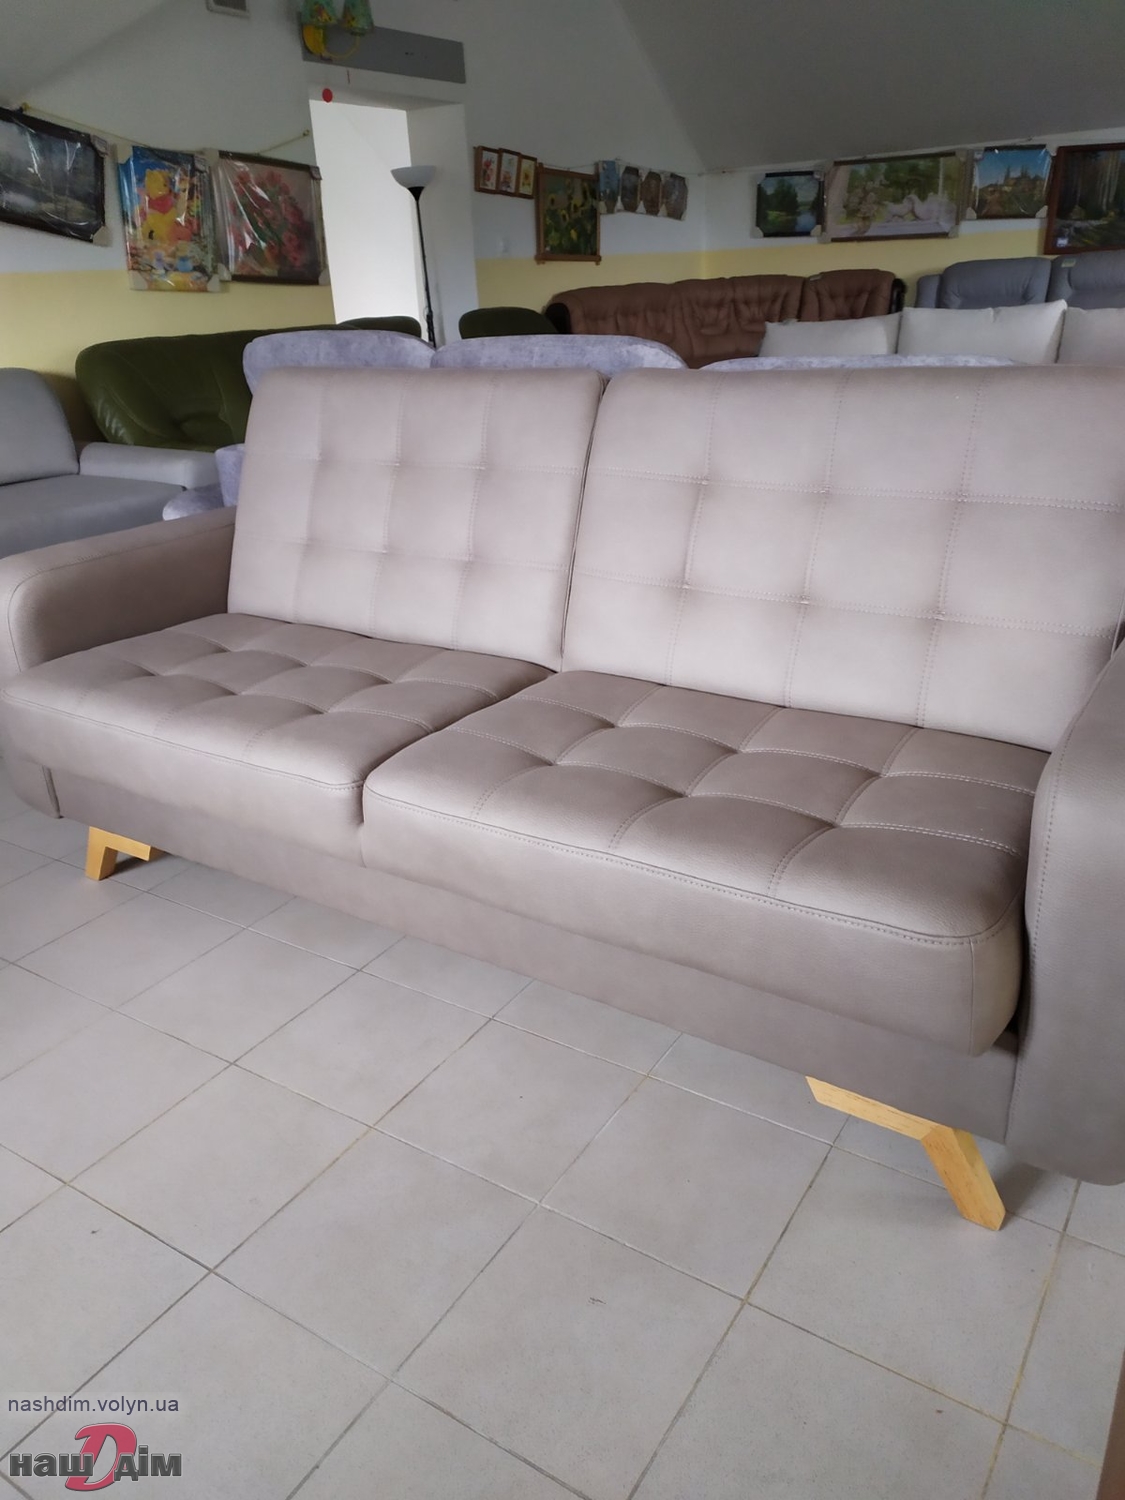 БРУНО стильний диван від ДАНІРО ID624-2 матеріали та колір